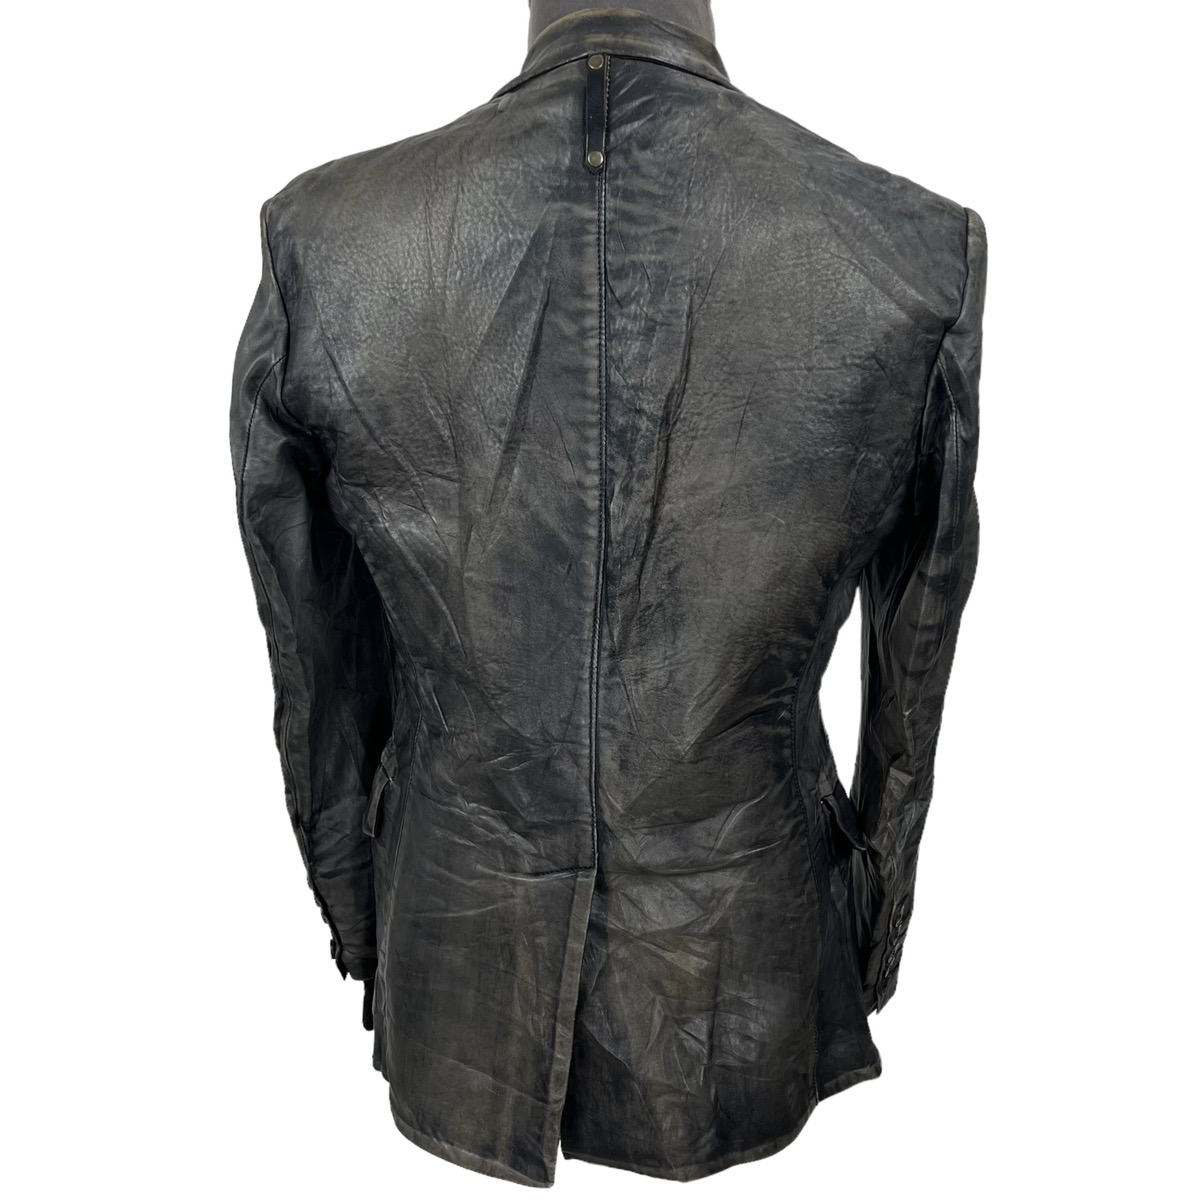 Lamb Leather Jacket - 5